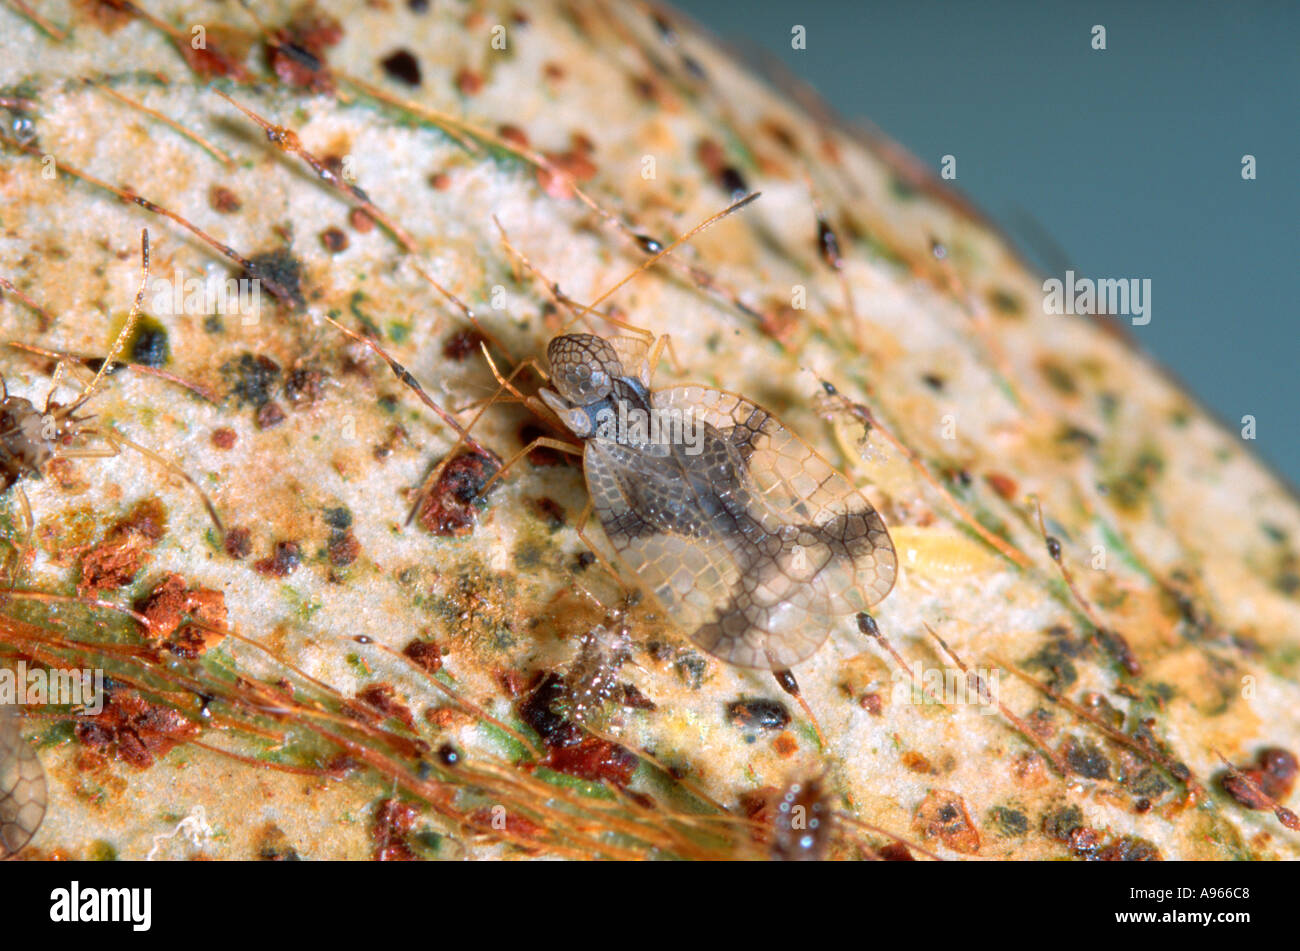 Azalea lace bug (adult and nymphs) and damage caused to Azalea Stock Photo